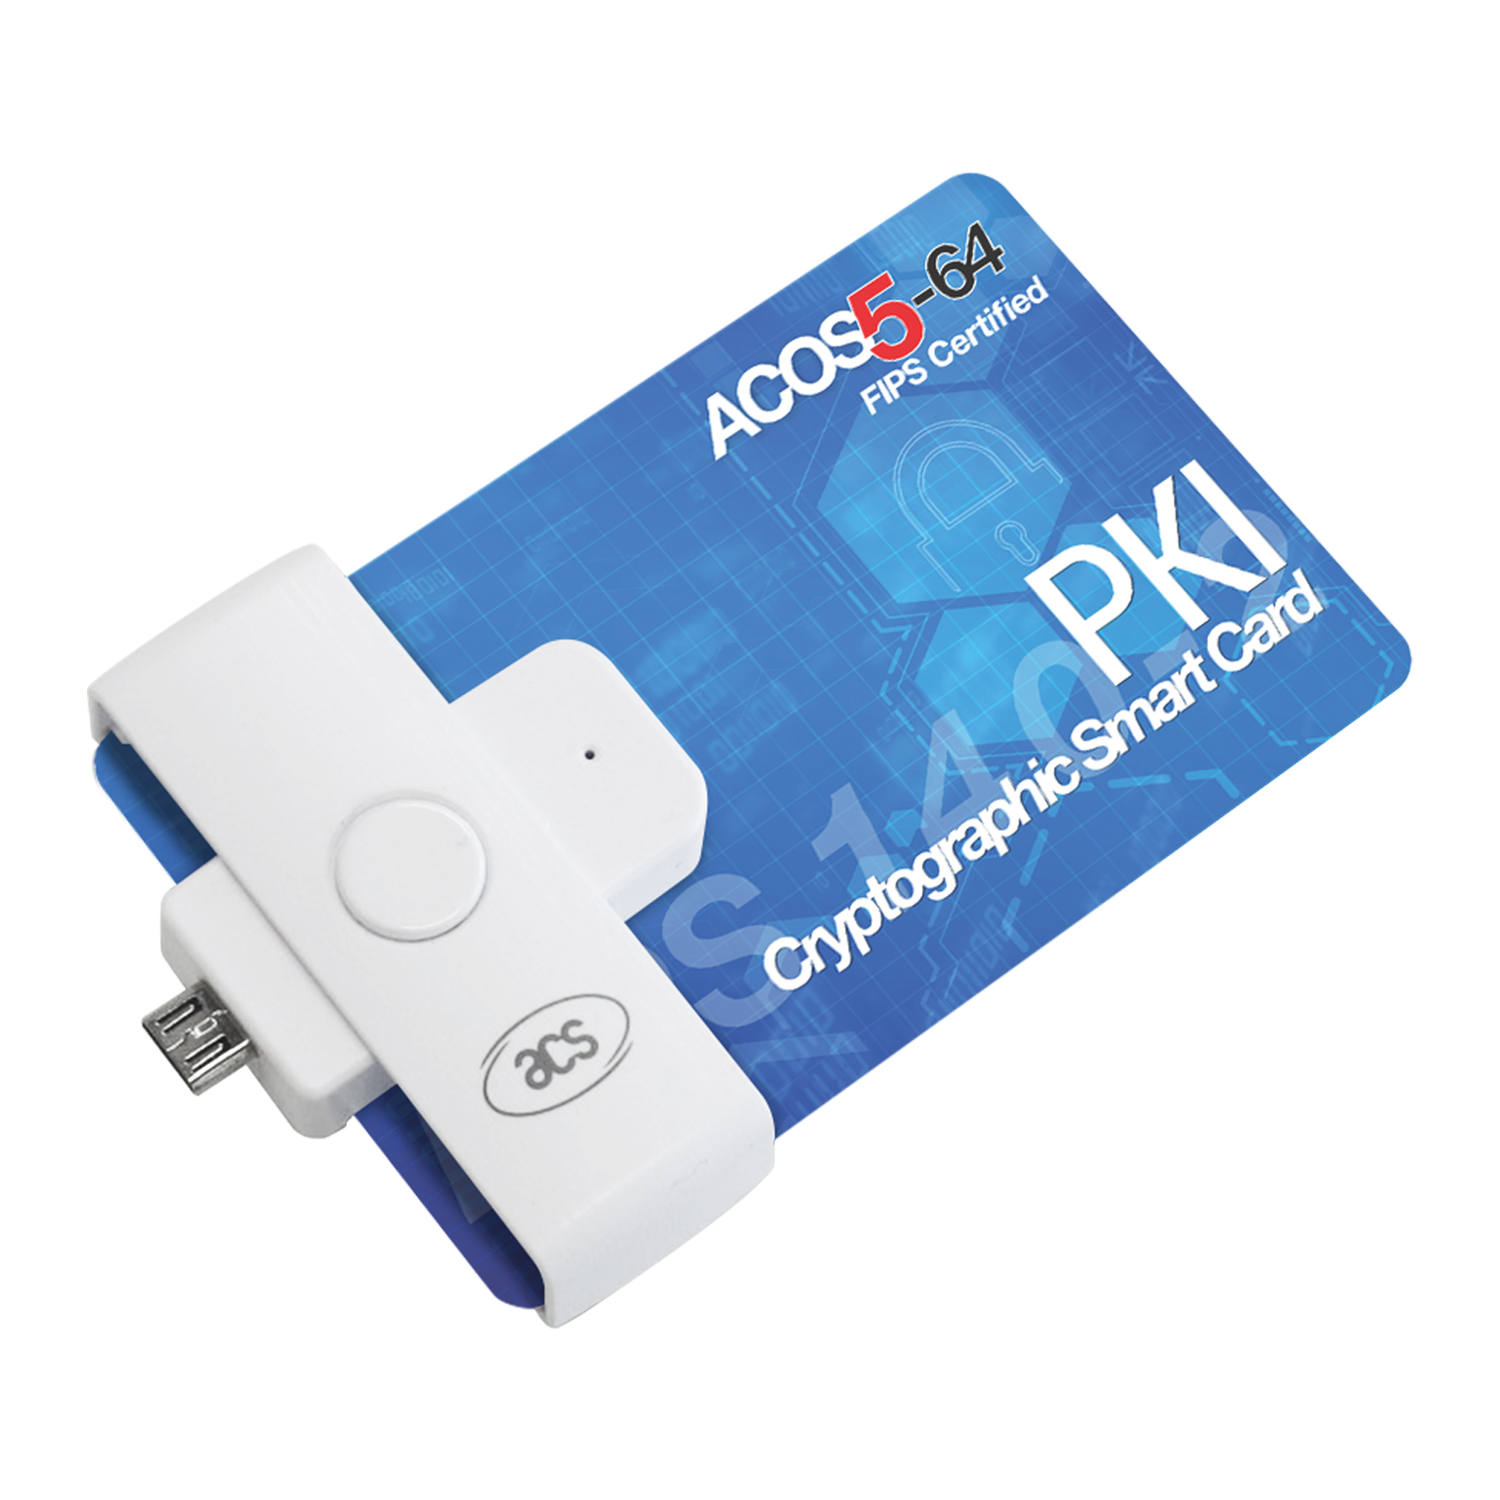 Устройство чтения смарт-карт контакта ACS ISO7816 EMV UnionPay портативное для электронной оплаты ACR39U-ND